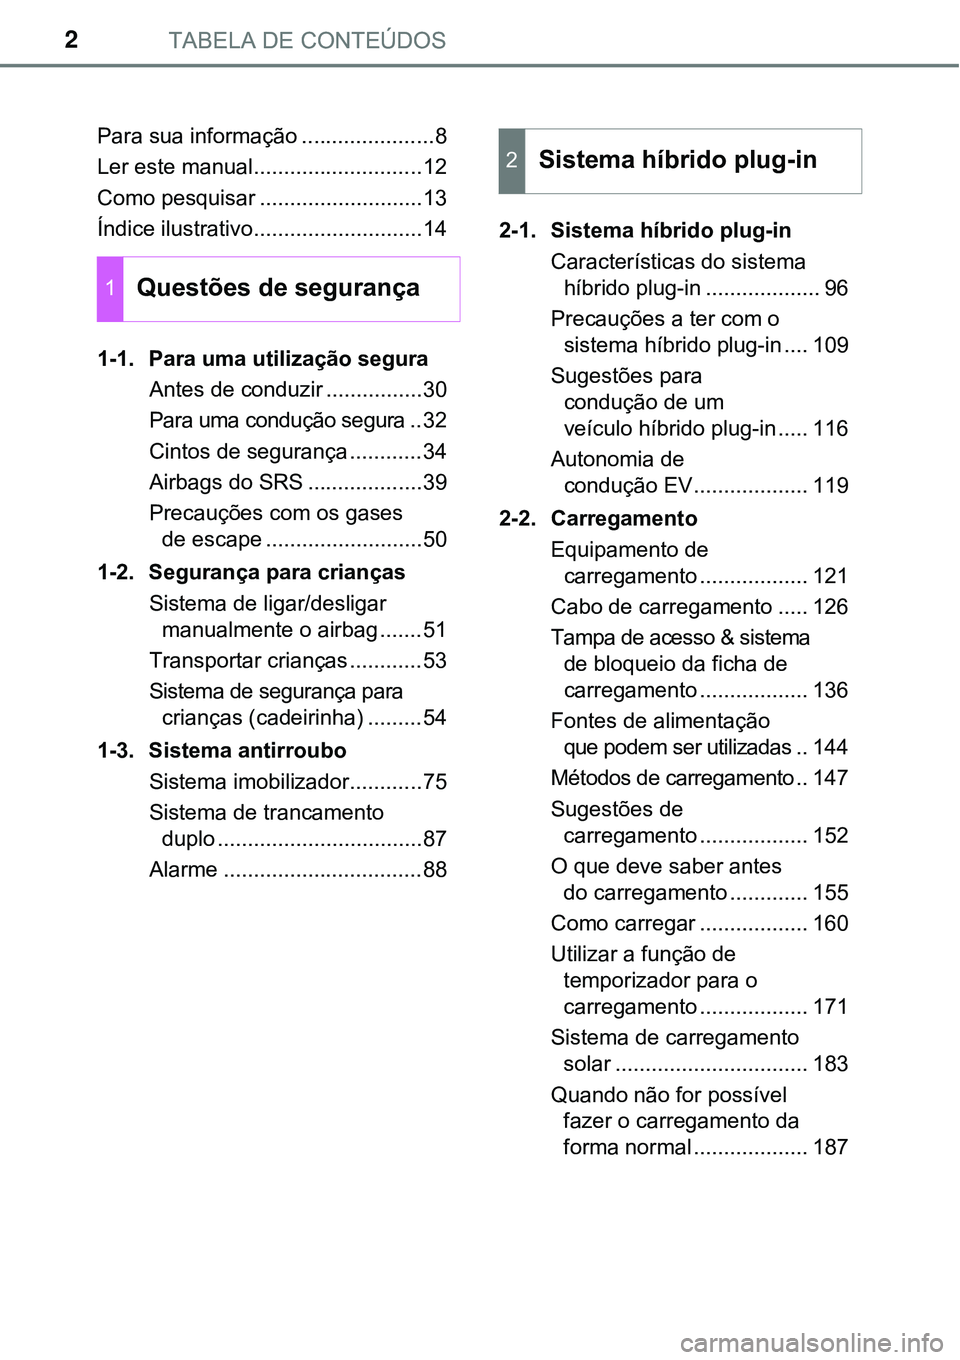 TOYOTA PRIUS PLUG-IN HYBRID 2018  Manual de utilização (in Portuguese) TABELA DE CONTEÚDOS2
Para sua informação ......................8
Ler este manual............................12
Como pesquisar ...........................13
Índice ilustrativo......................